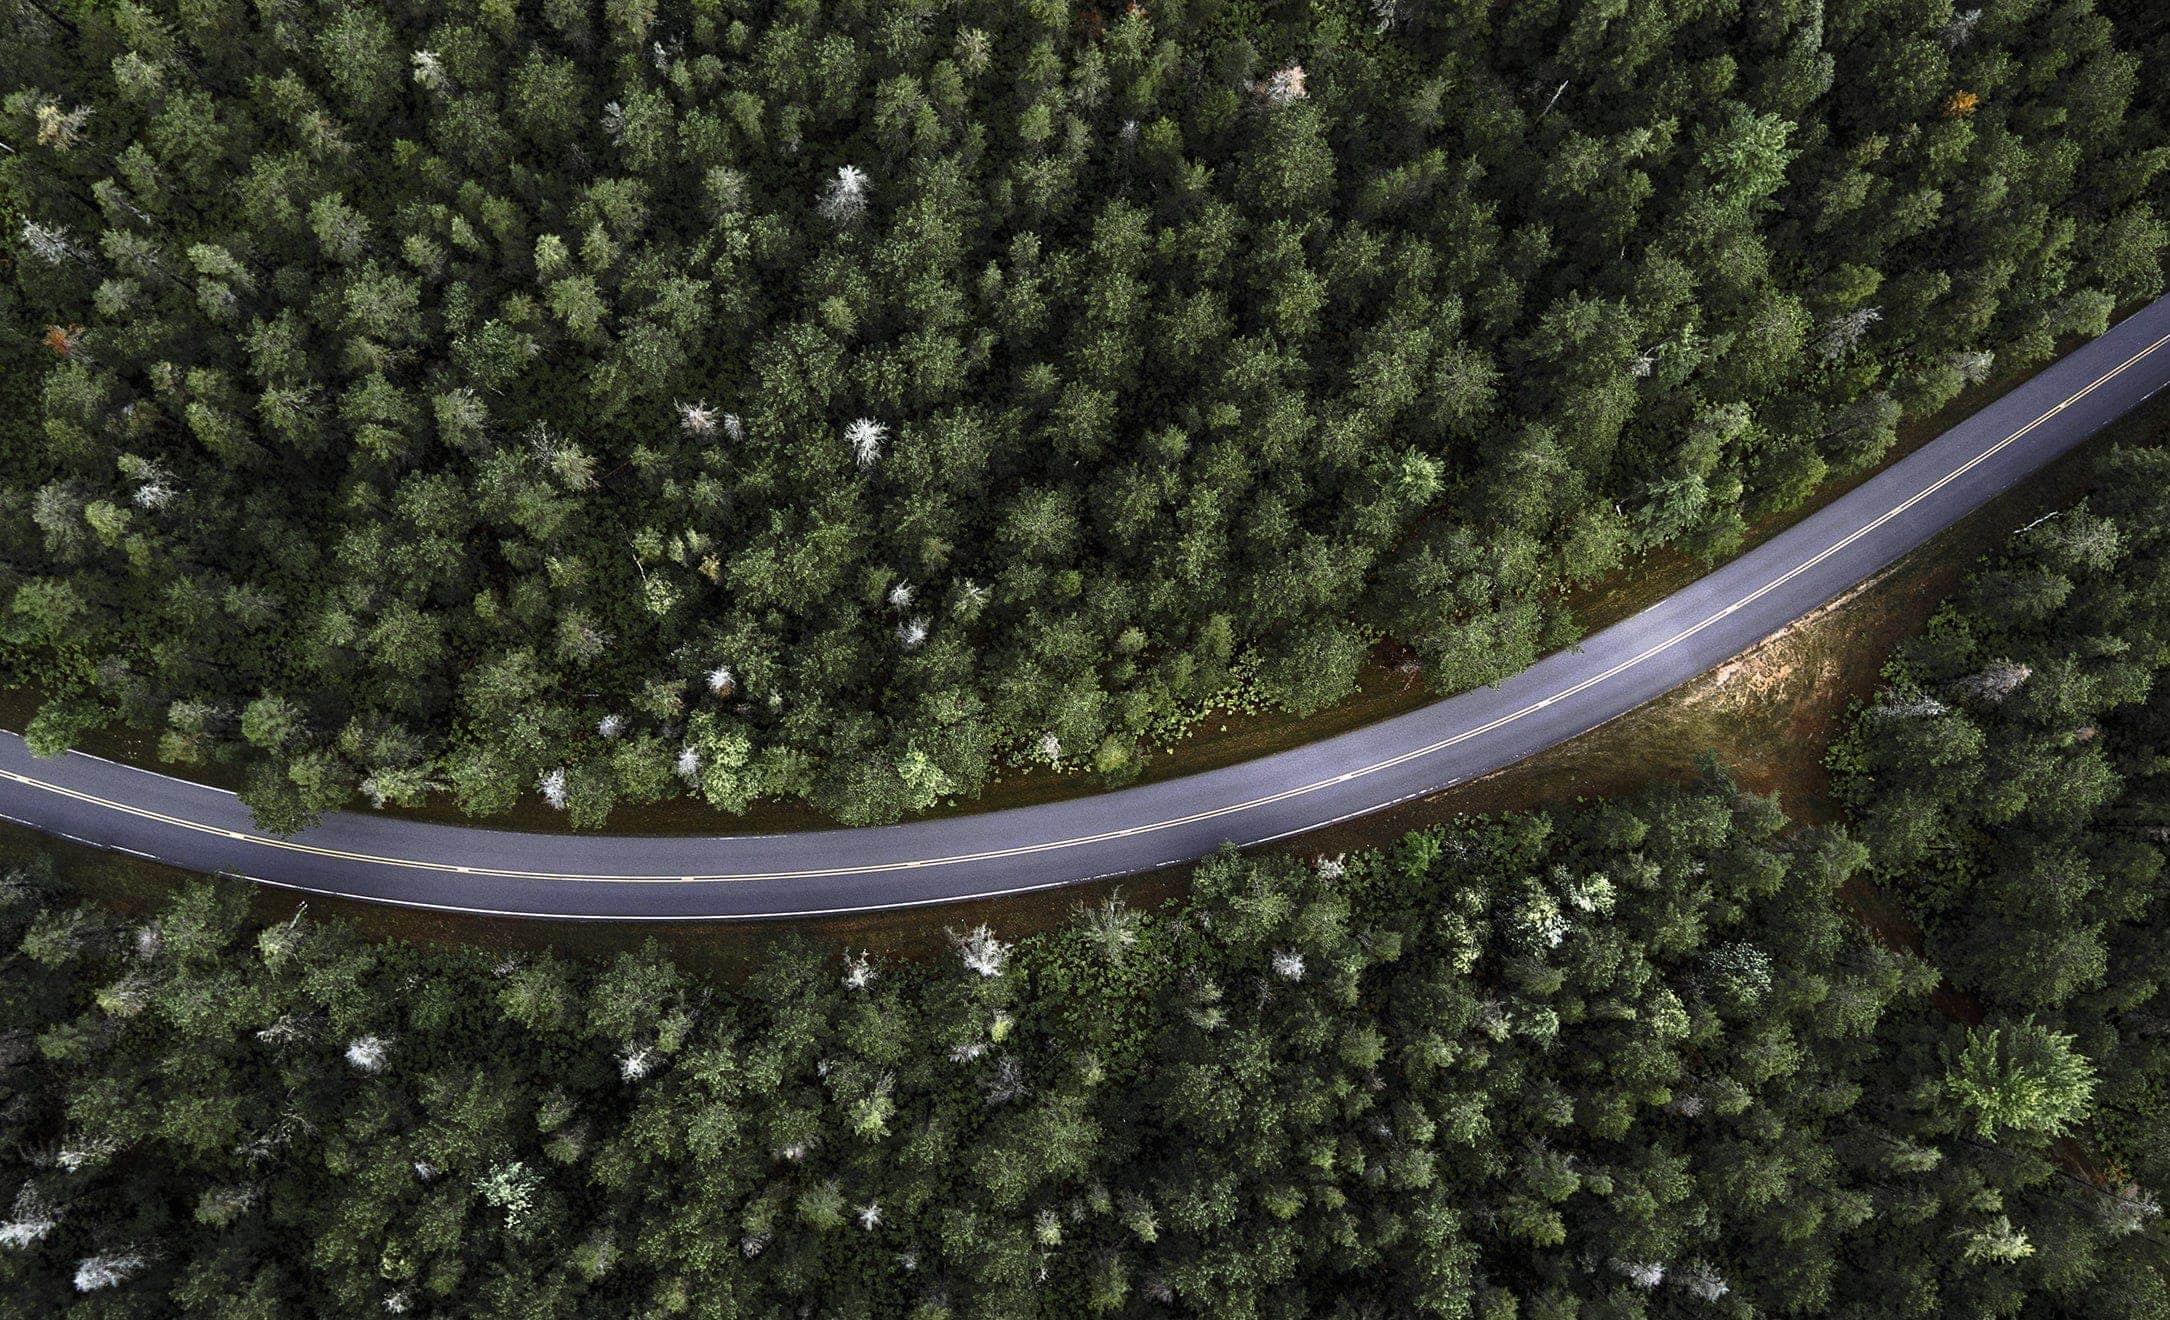 Widok z lotu ptaka na pustą asfaltową drogę pośród drzew odnosi się do bezemisyjnego poruszania się nowej hybrydy SEAT Leon e-Hybrid typu Plug-in